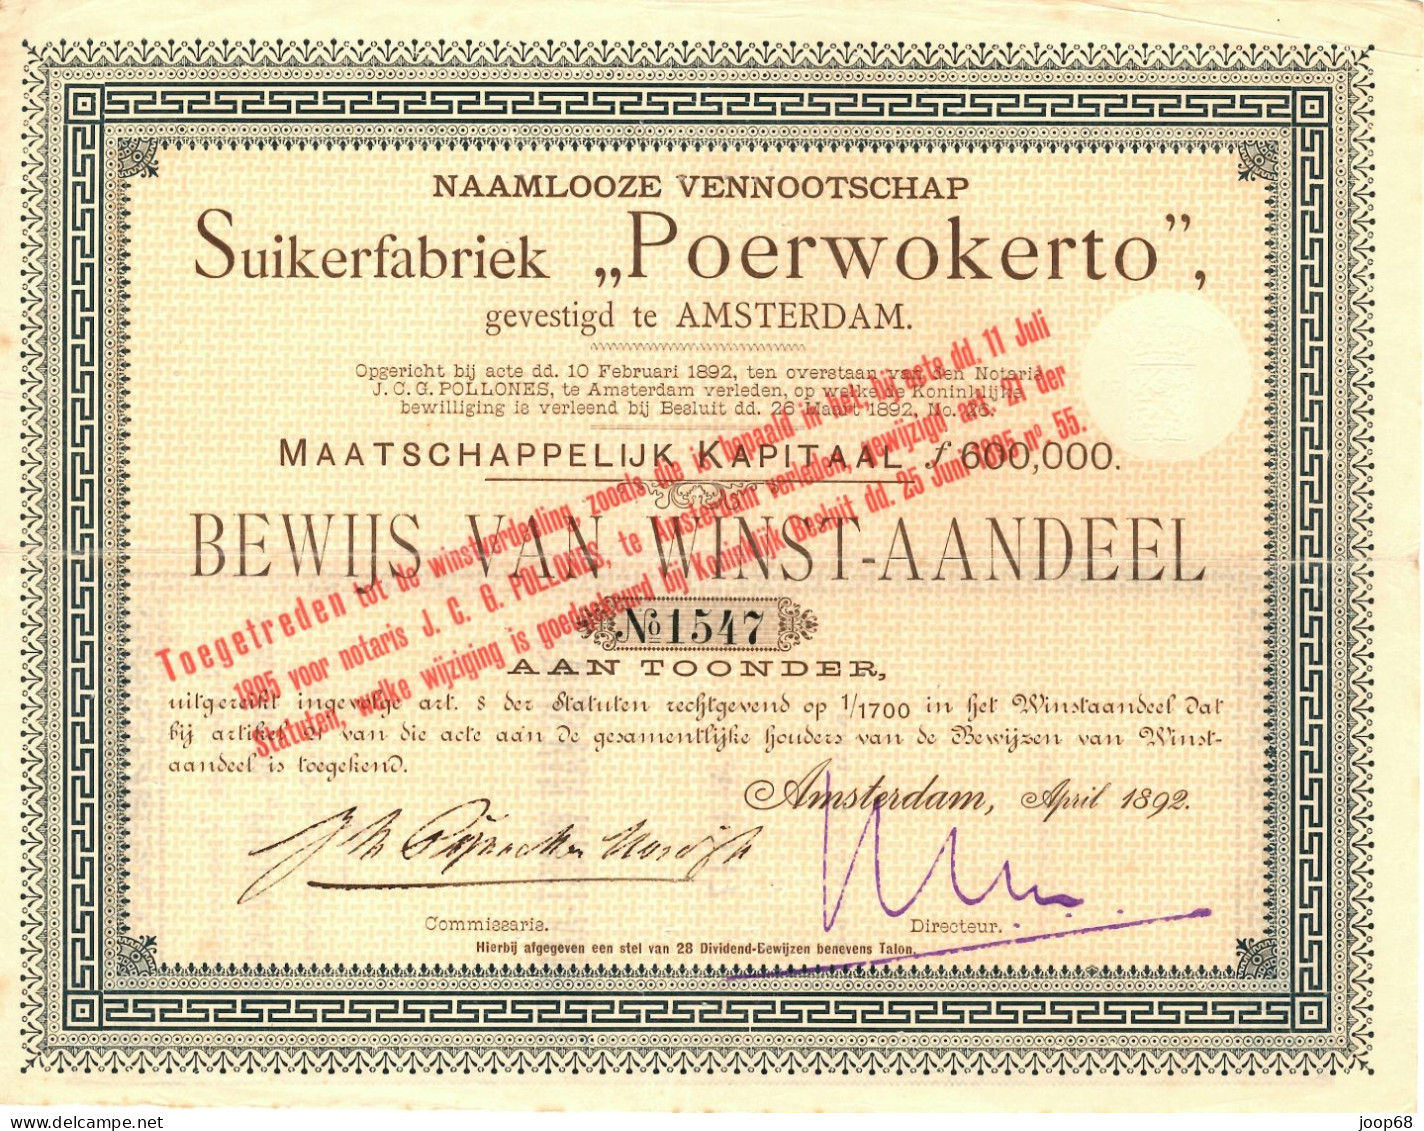 Suikerfabriek "Poerwokerto" N.V. - Winst-Aandeel - Amsterdam, April 1892 Indonesia - Landbouw